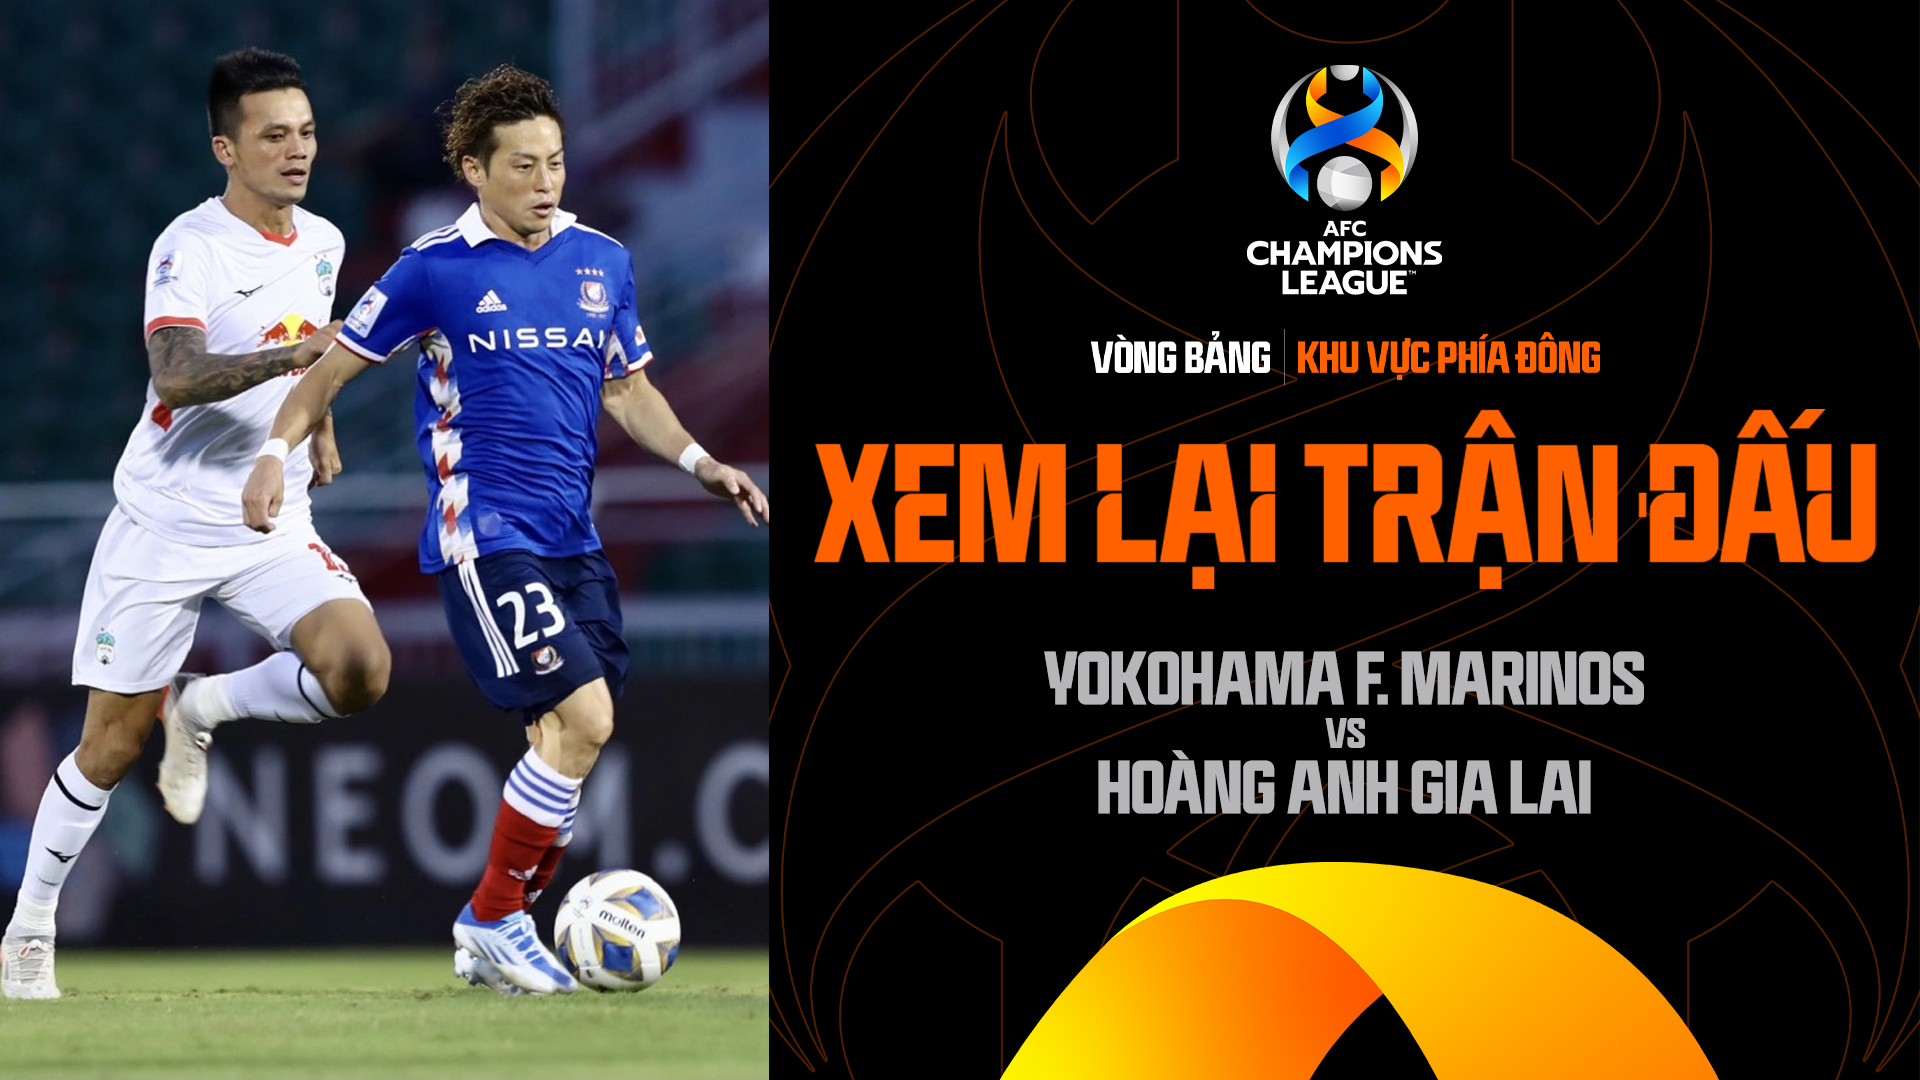 Yokohama F. Marinos - Hoàng Anh Gia Lai | Xem lại trận đấu - AFC Champions League